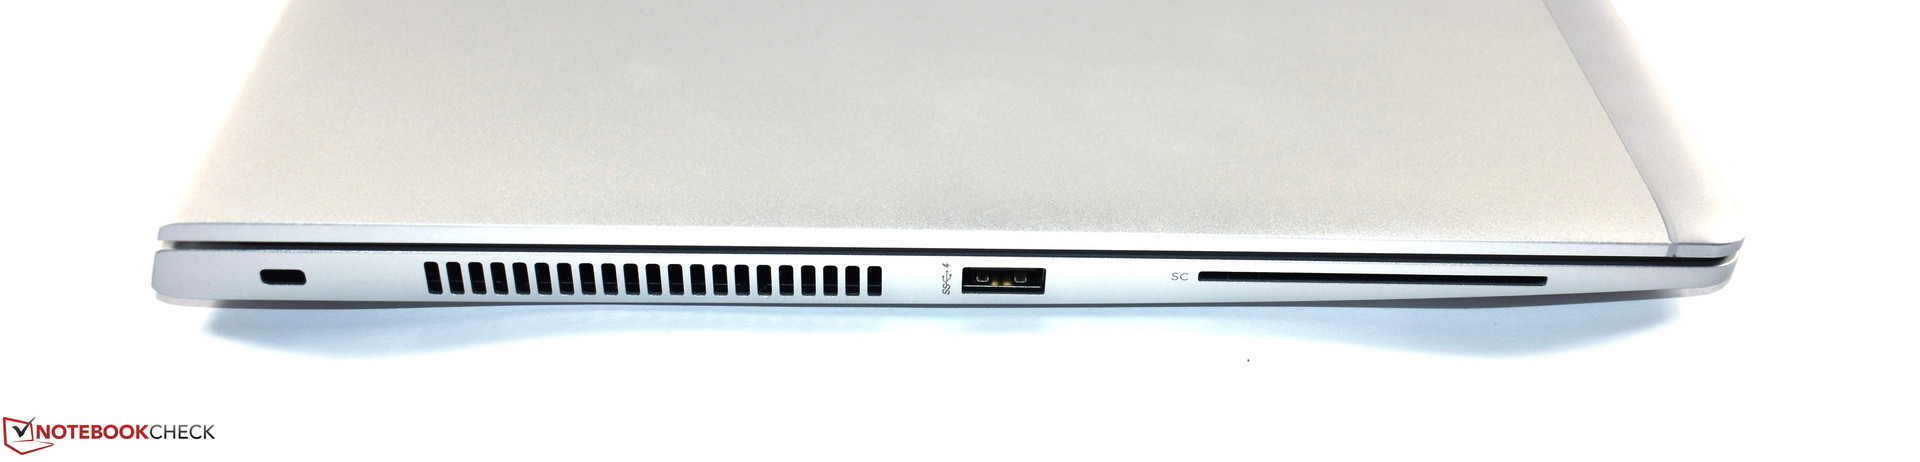 Kaldırmak başarı eşarp  HP EliteBook 850 G5 (i5-8250U, FHD) Laptop Review - NotebookCheck.net  Reviews